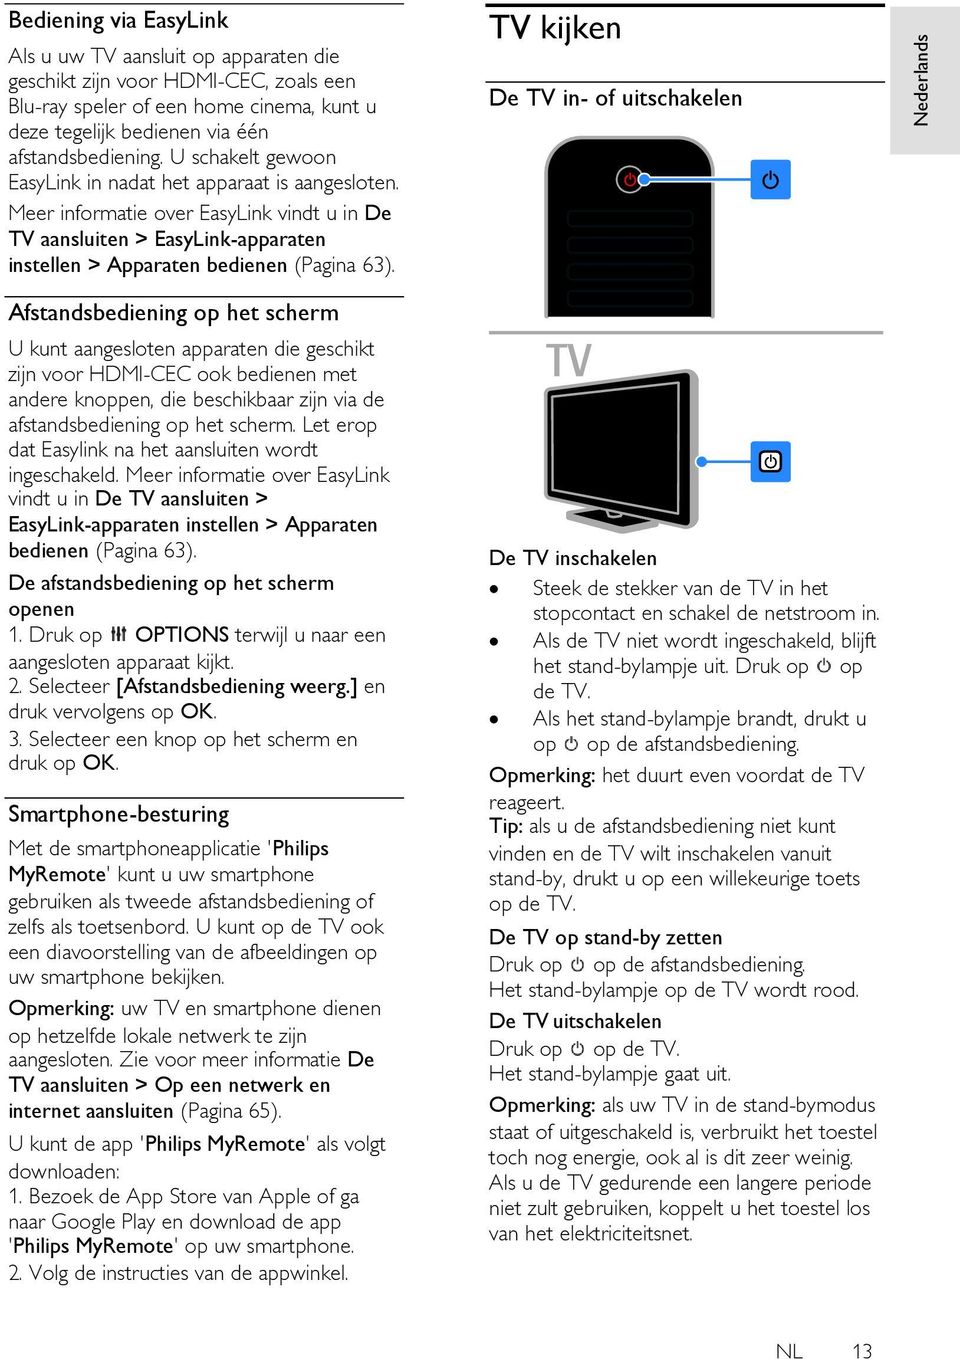 Meer informatie over EasyLink vindt u in De TV aansluiten > EasyLink-apparaten instellen > Apparaten bedienen (Pagina 63).